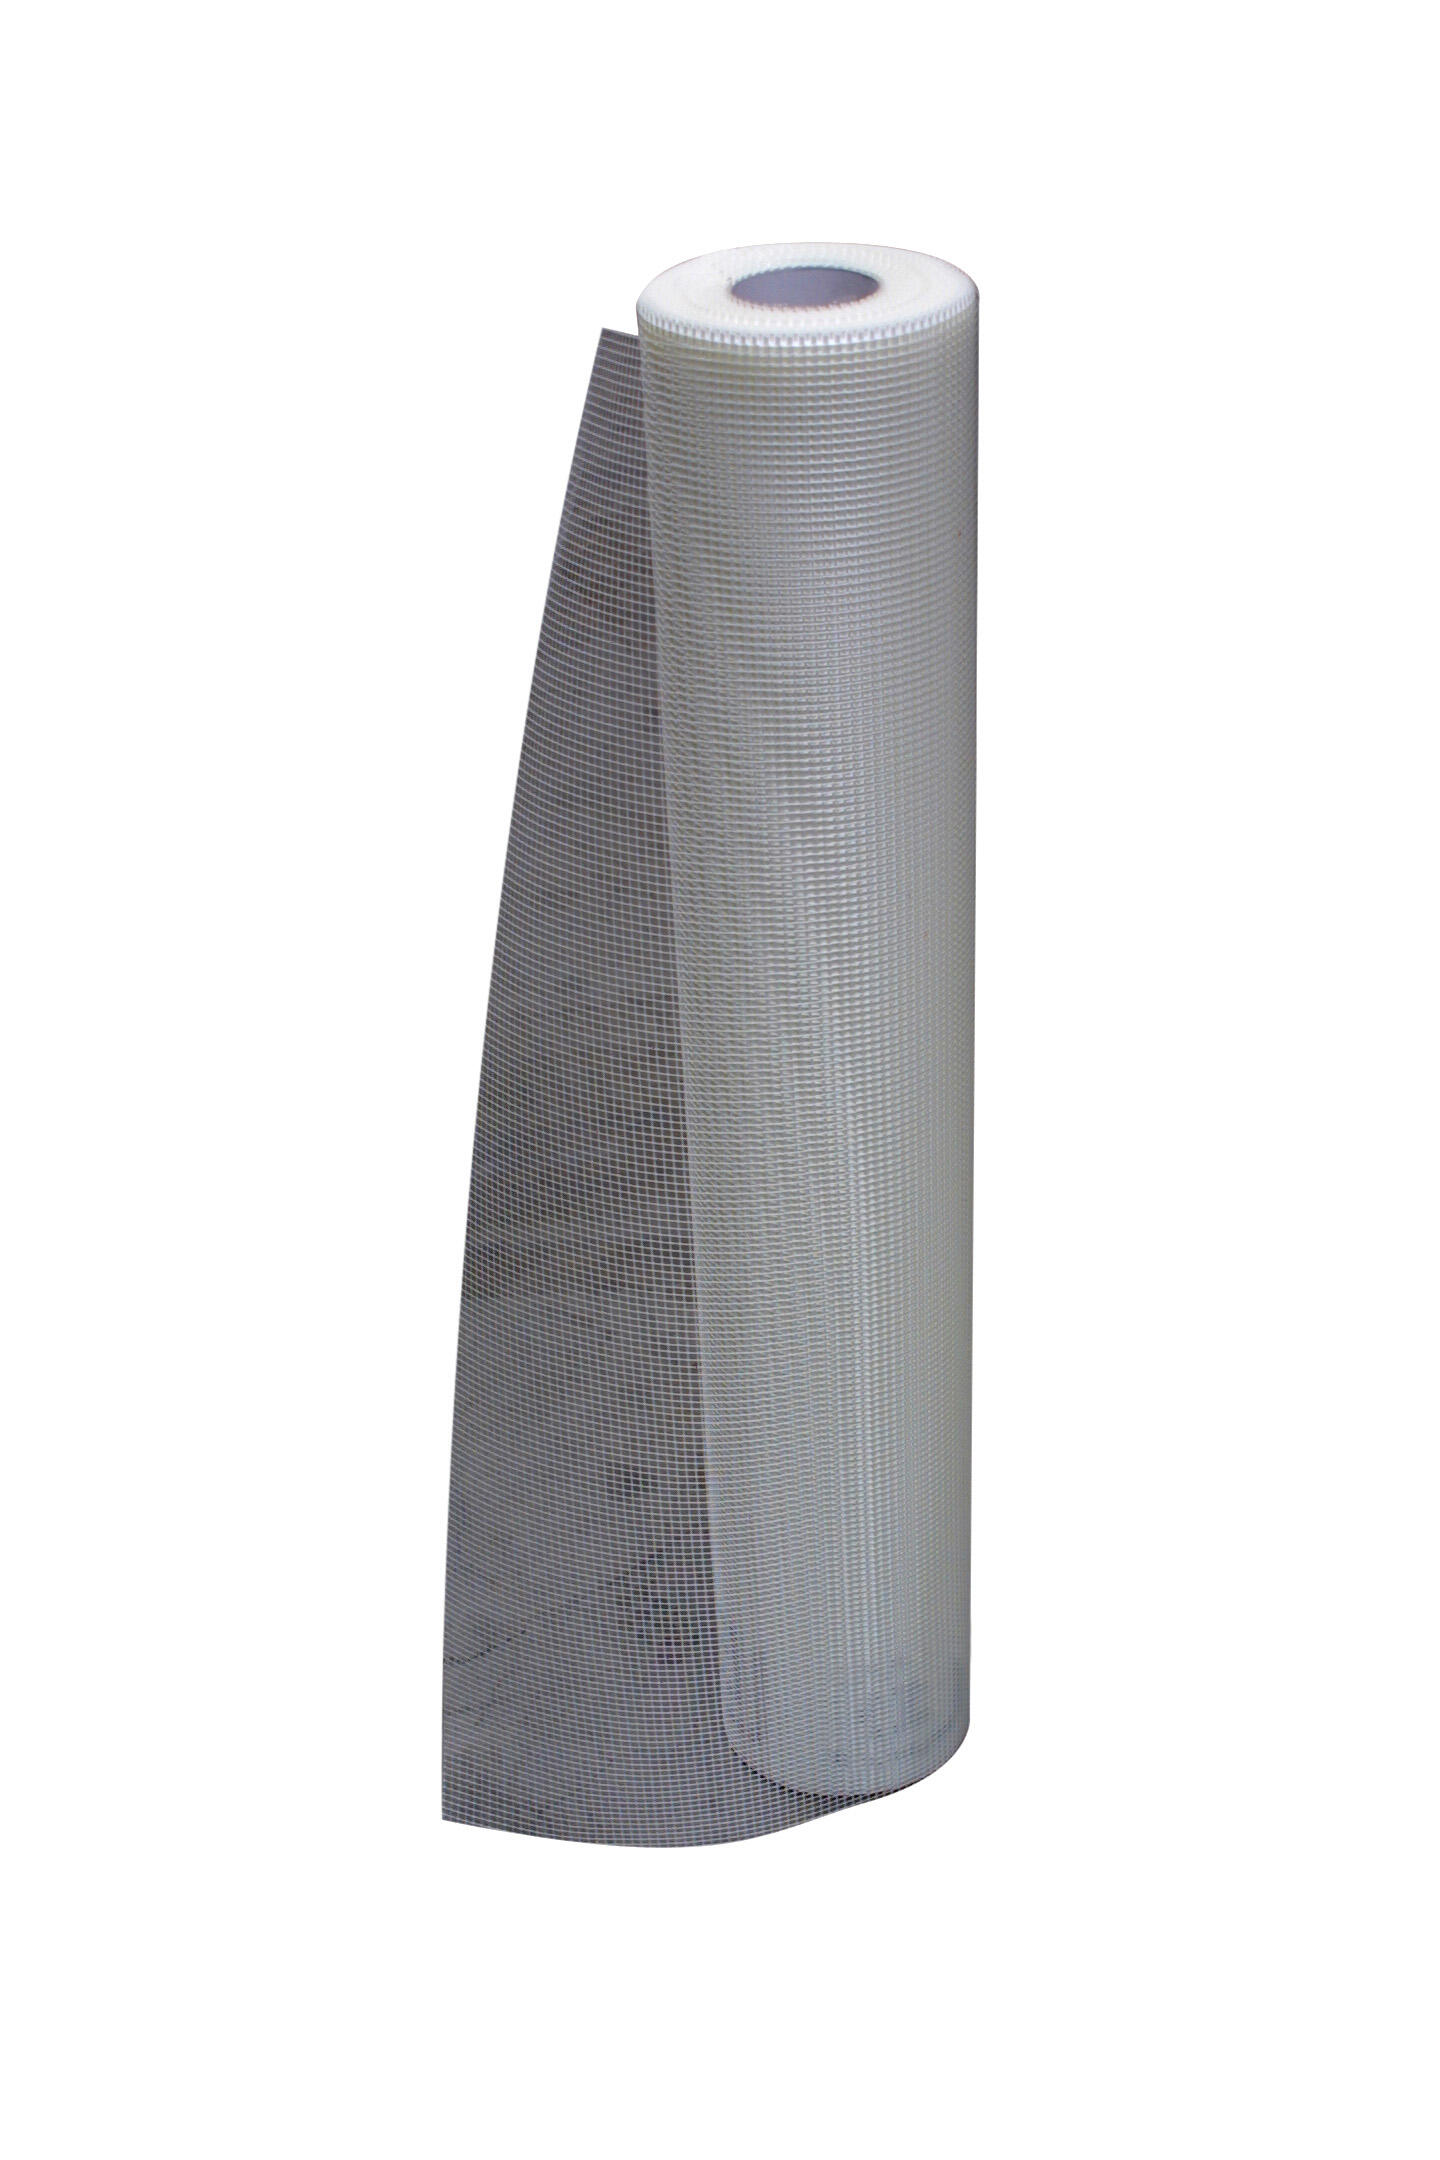 Rouleau tissu en fibre de verre Fin de rénovation TOUPRET, L.50 m x l.1 mm